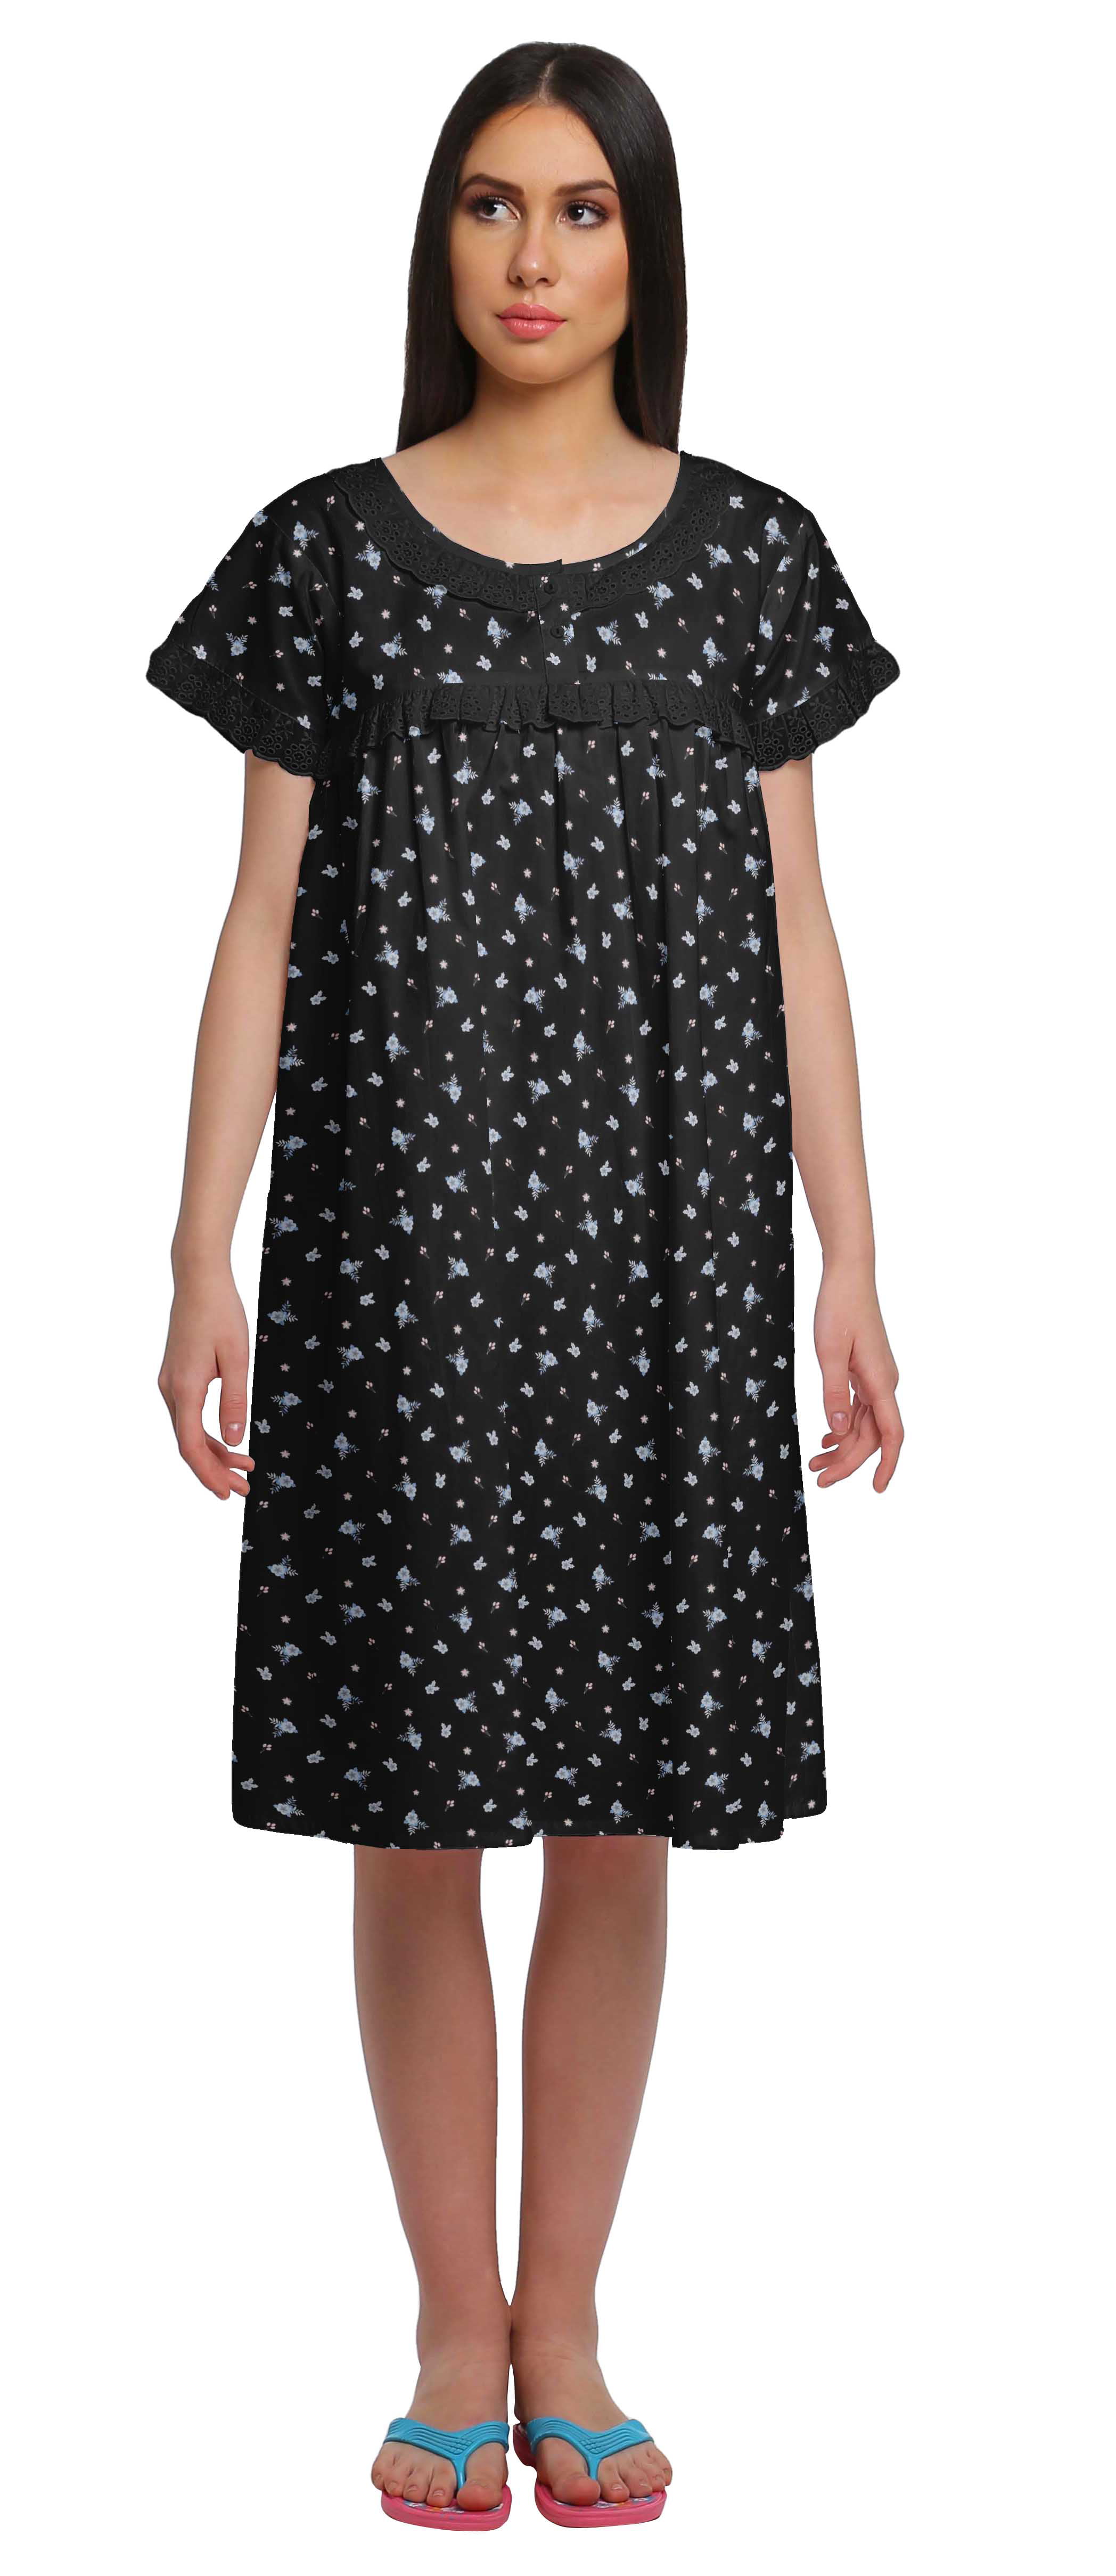 Moomaya Cotton Lace Neckline Sleepwear for Ladies Round Neck Womens Nightdress